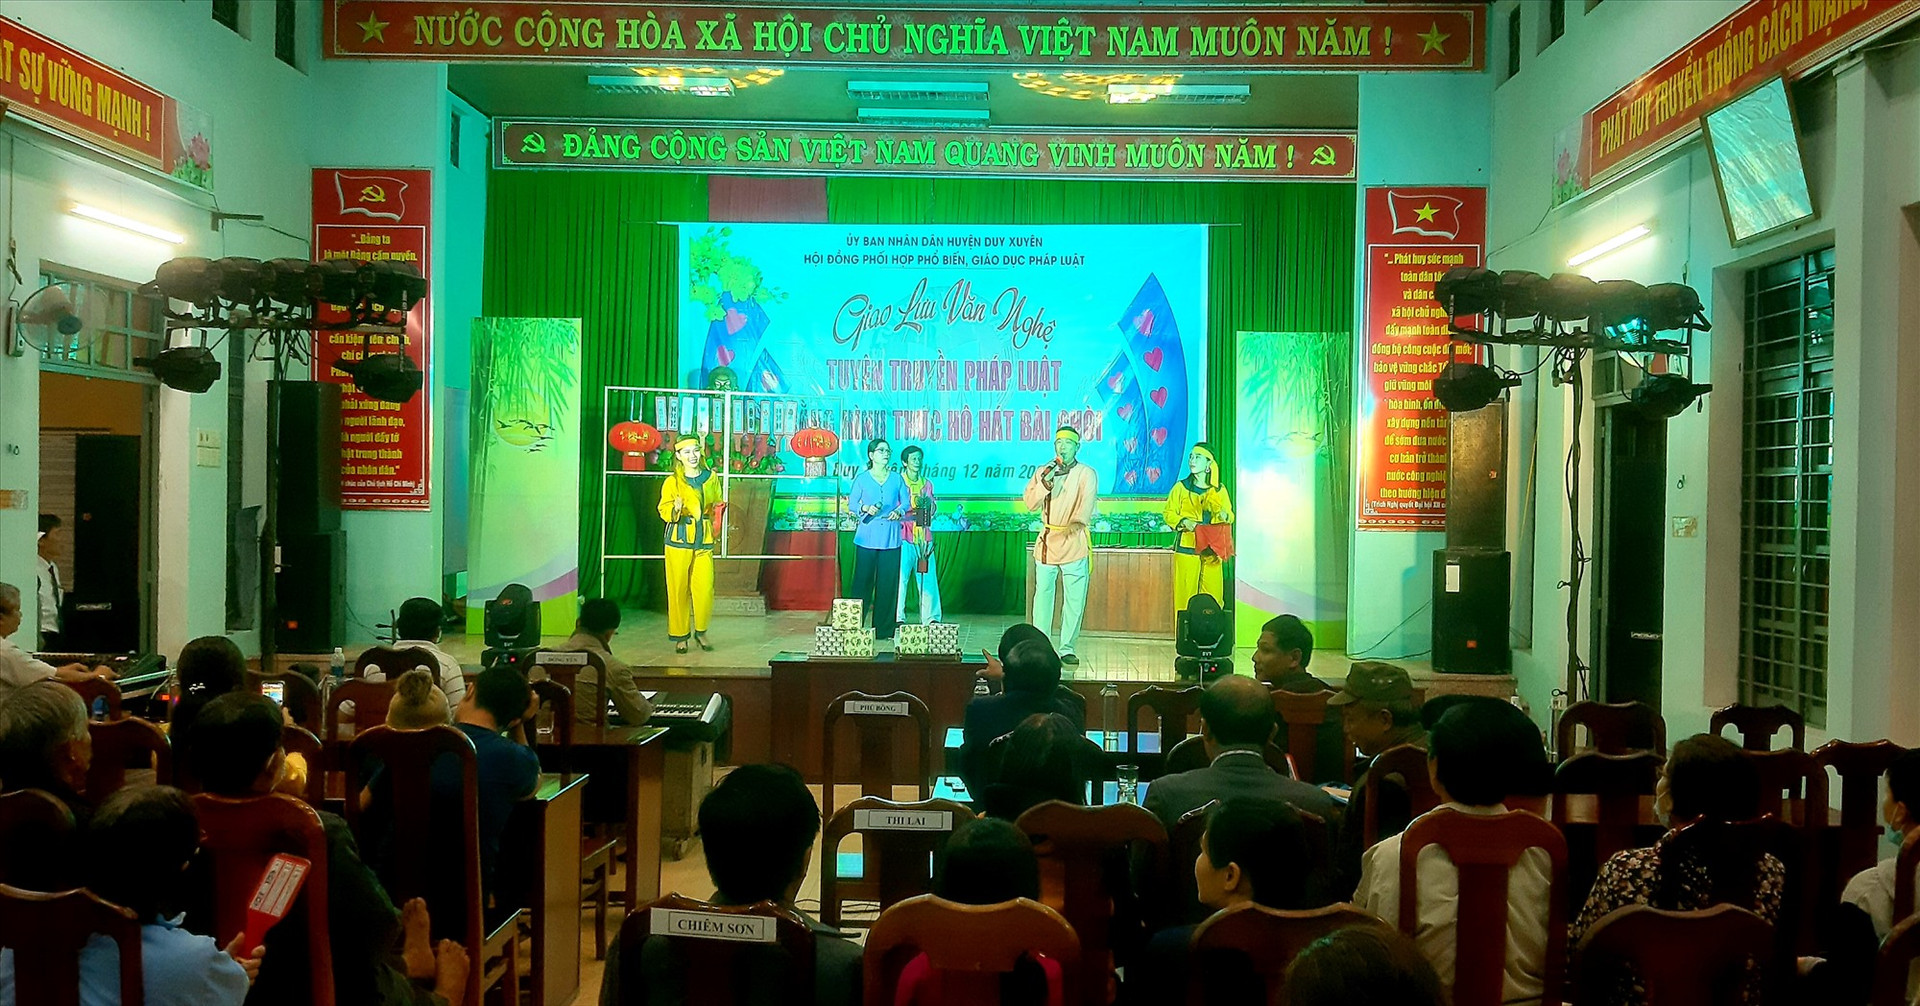 Quang cảnh buổi tuyên truyền pháp luật bằng hô hát bài chòi tại xã Duy Trinh, diễn ra tối qua 17.12.  Ảnh: T.L